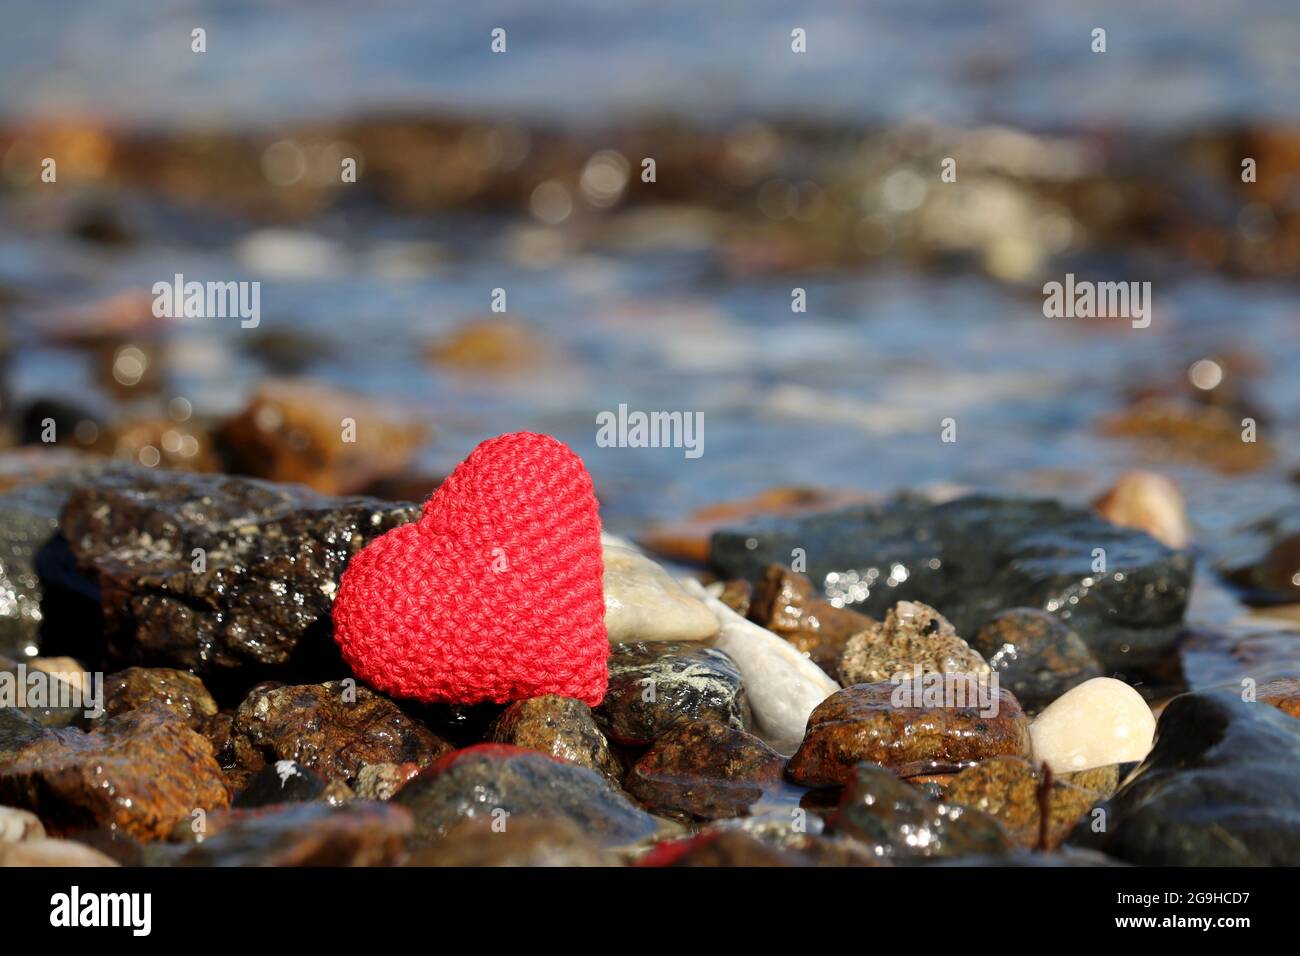 Liebe am Strand, rot gestricktes Herz auf einem Kieselstein auf Meeresgrund. Konzept von Valentinstag, romantischem Sommer oder Flitterwochen Stockfoto